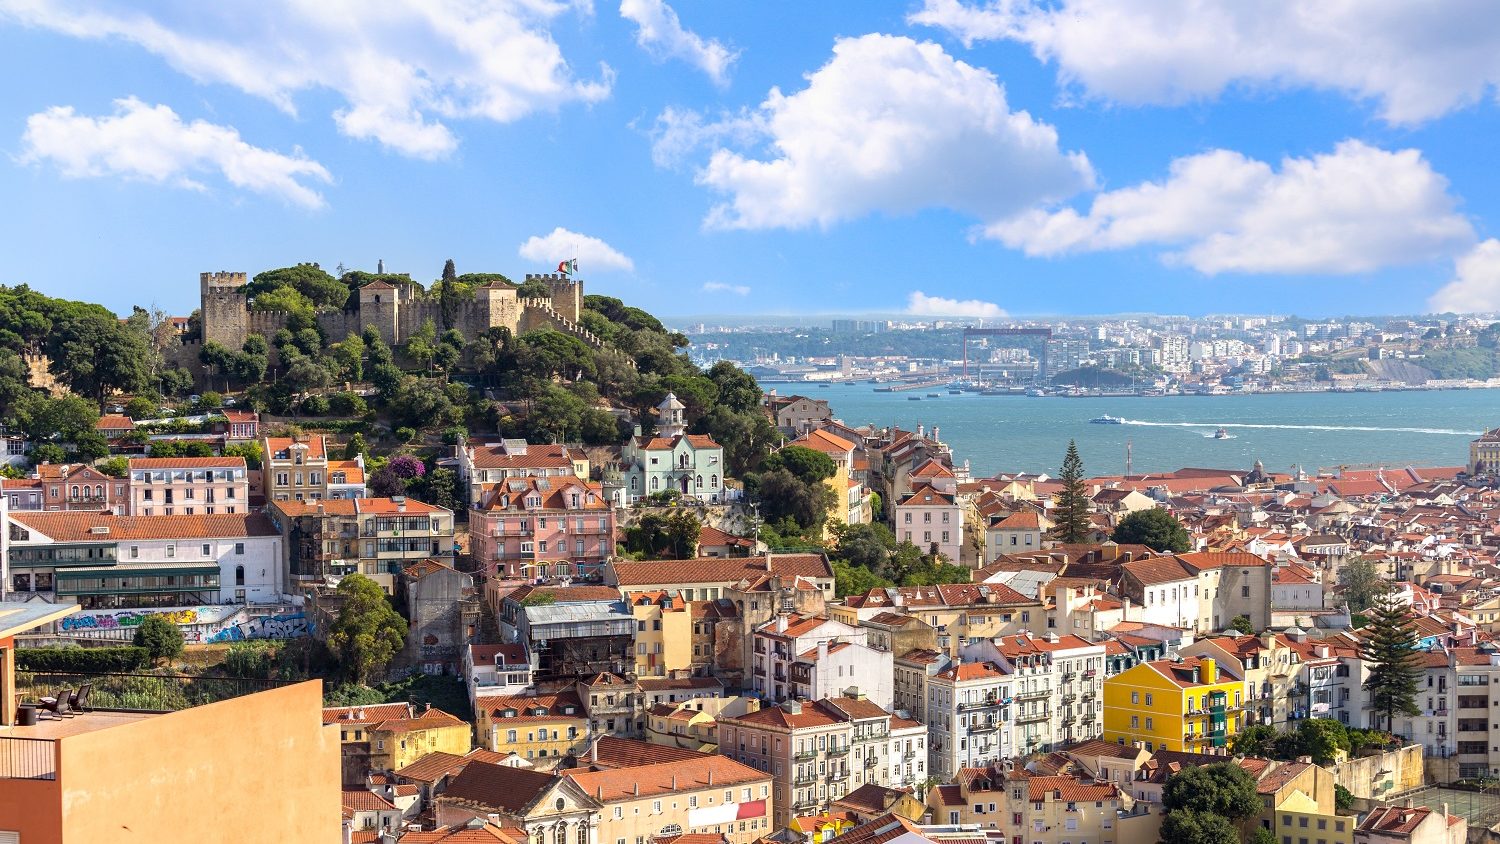 Real Estate Investment in Lisbon | RealEstateMarket